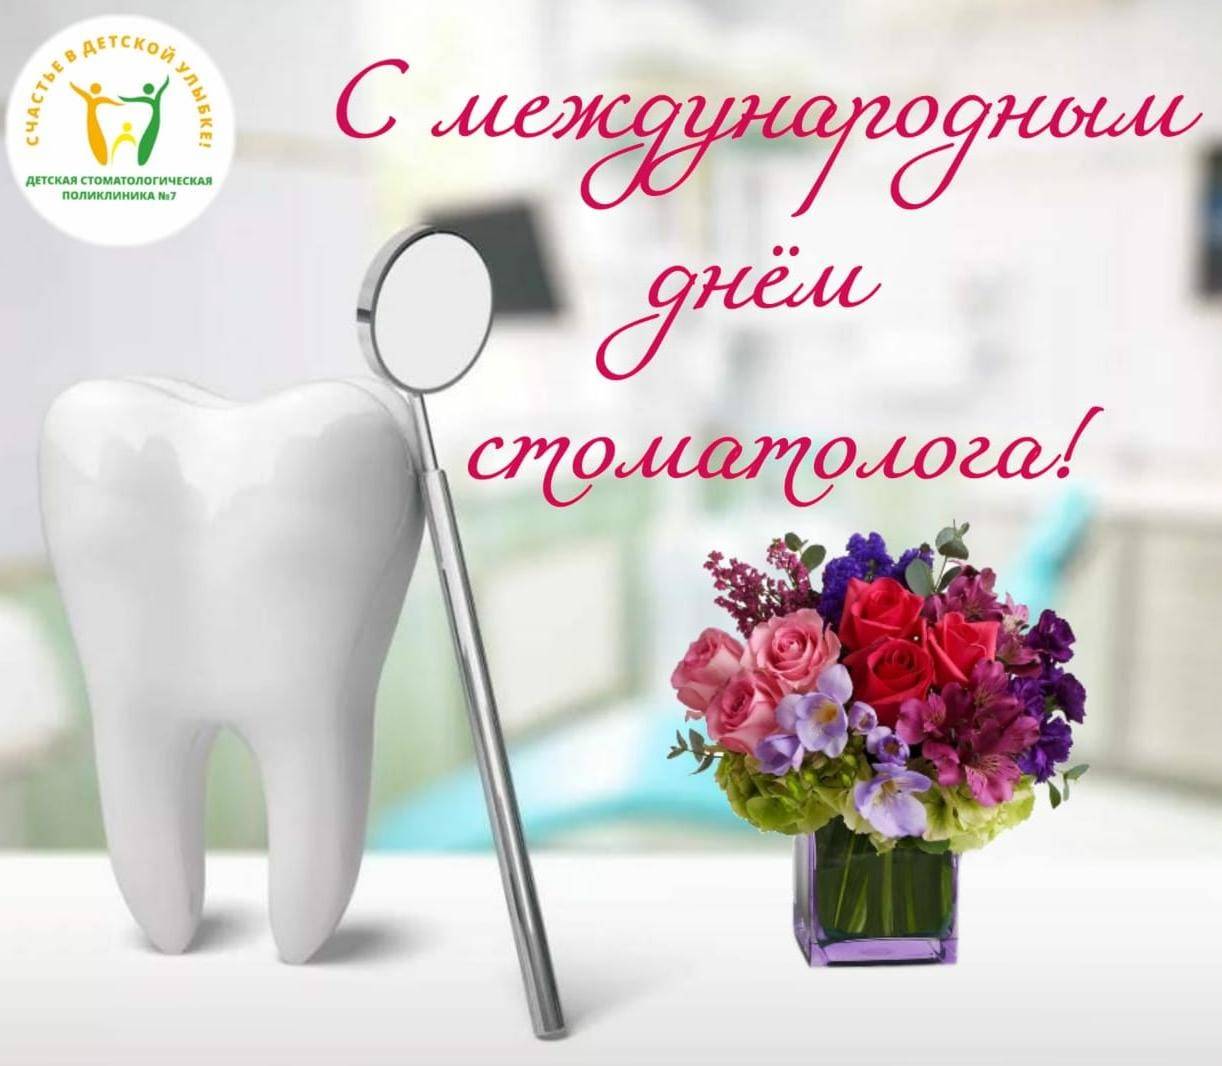 Международный день стоматологаforpost - здоровье |